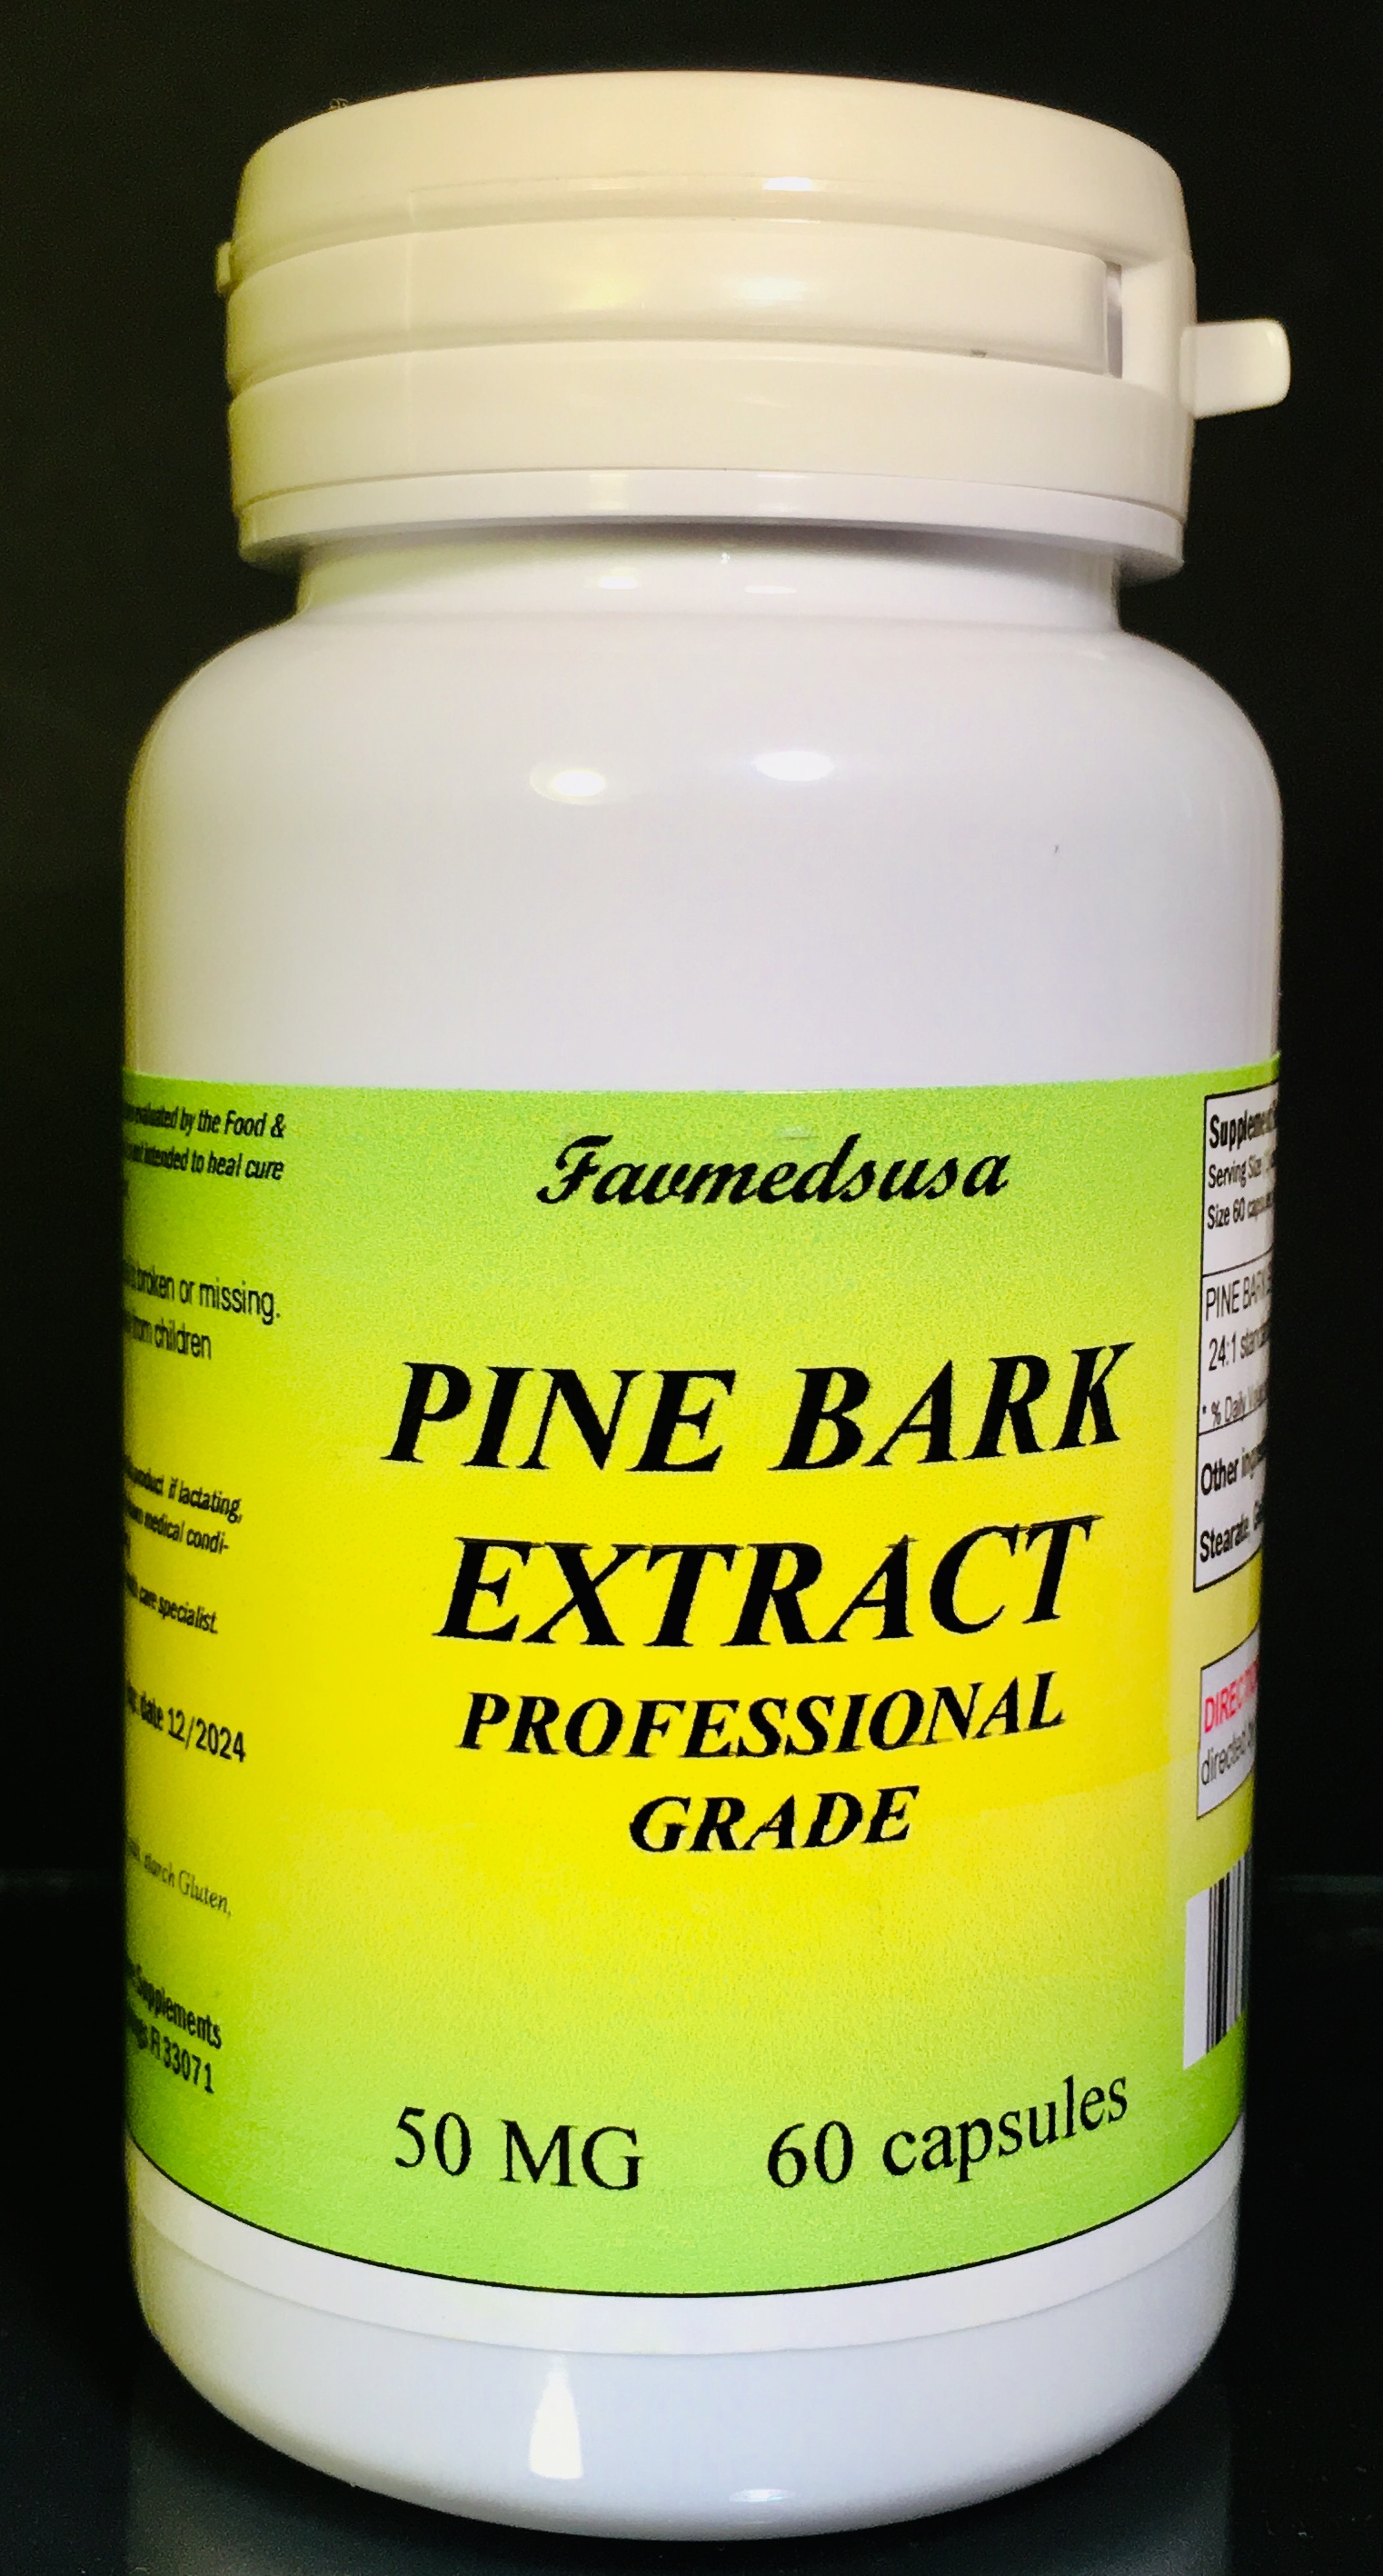 Pine Bark Extract 50mg - 60 capsules